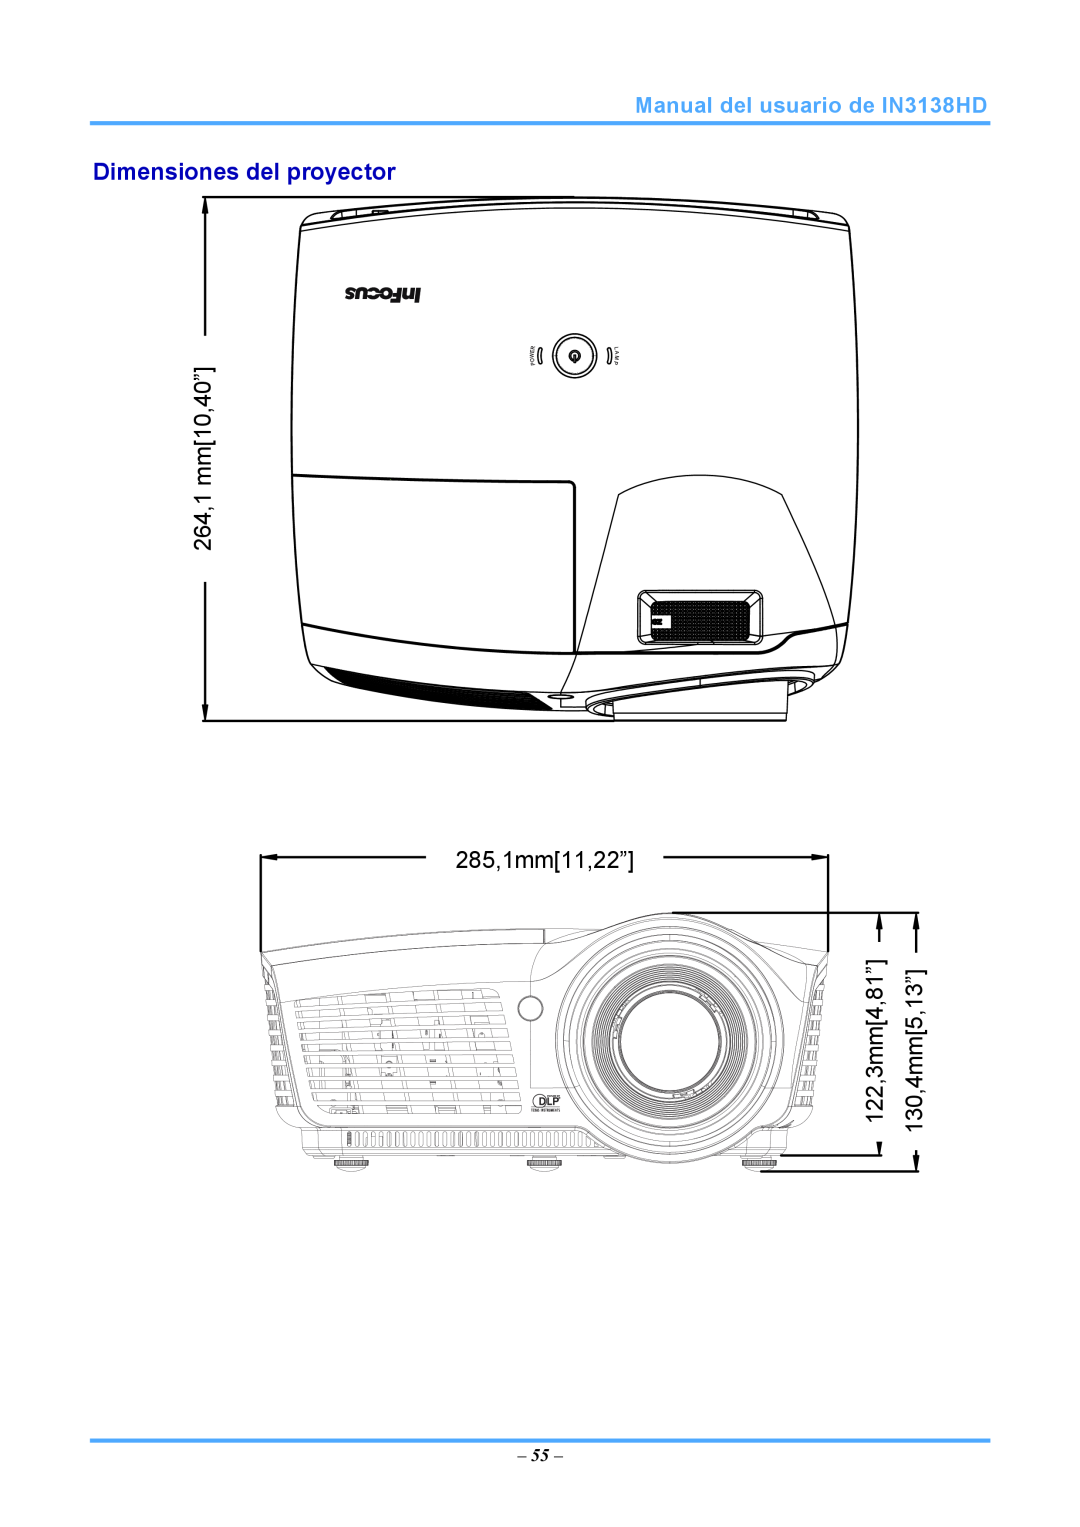 InFocus Dimensiones del proyector, 285,1mm11,22”, Manual del usuario de IN3138HD, 264,1.1mmmm10,40”.40, 130,4mm5,13” 